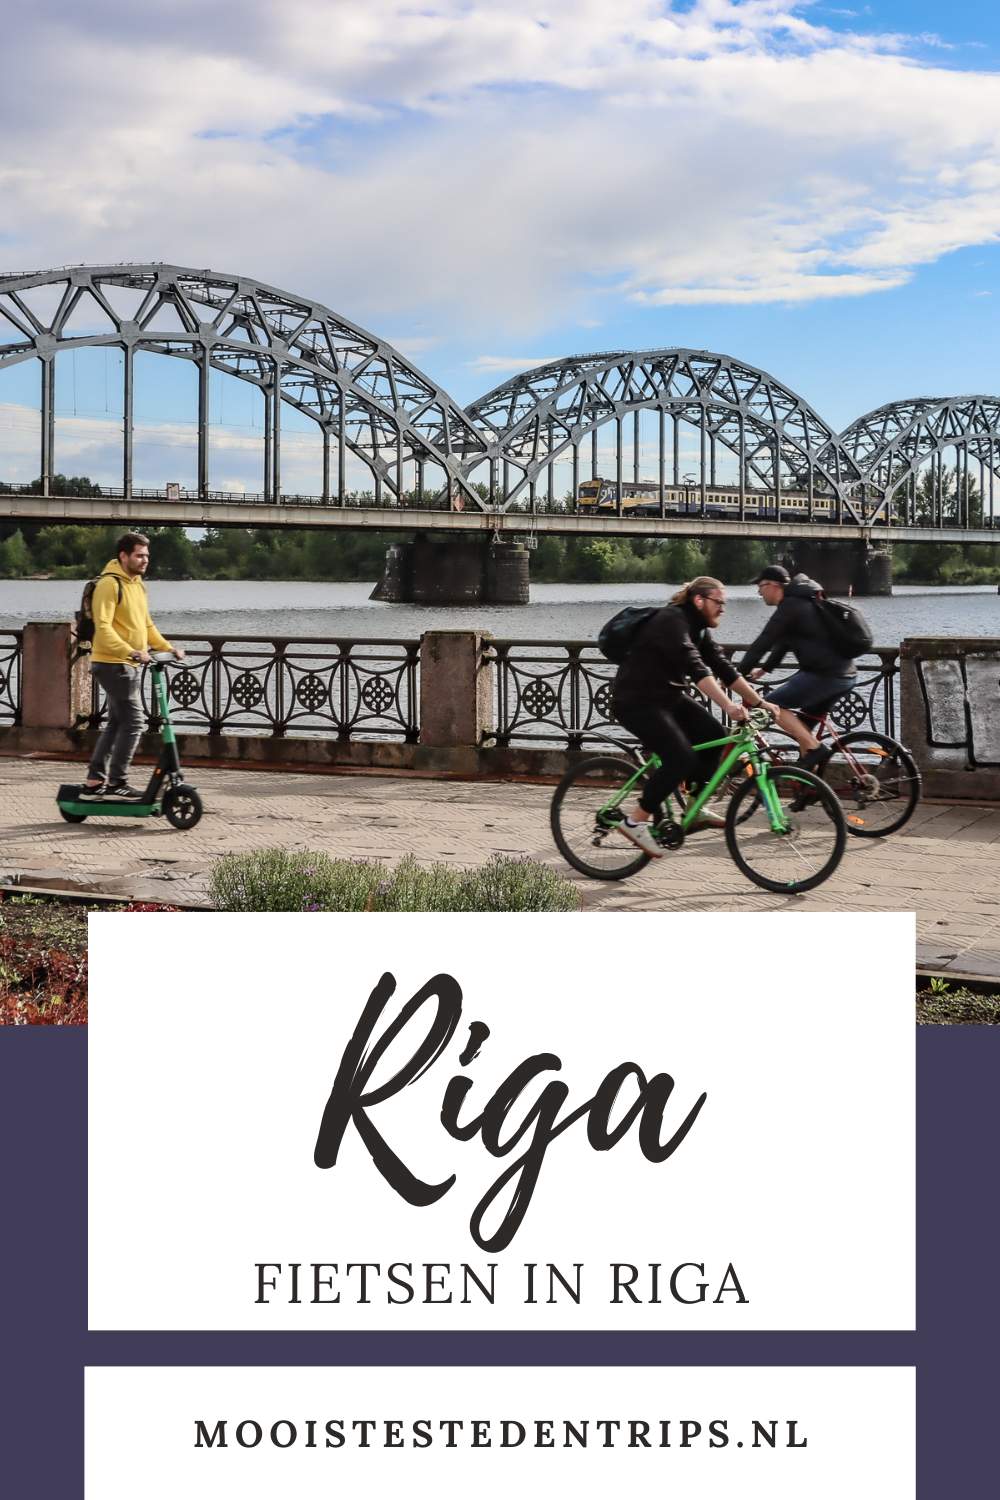 Fietsen in Riga (Baja Bikes Riga): zin in een fietstour in Riga? Bekijk de tips | Mooistestedentrips.nl